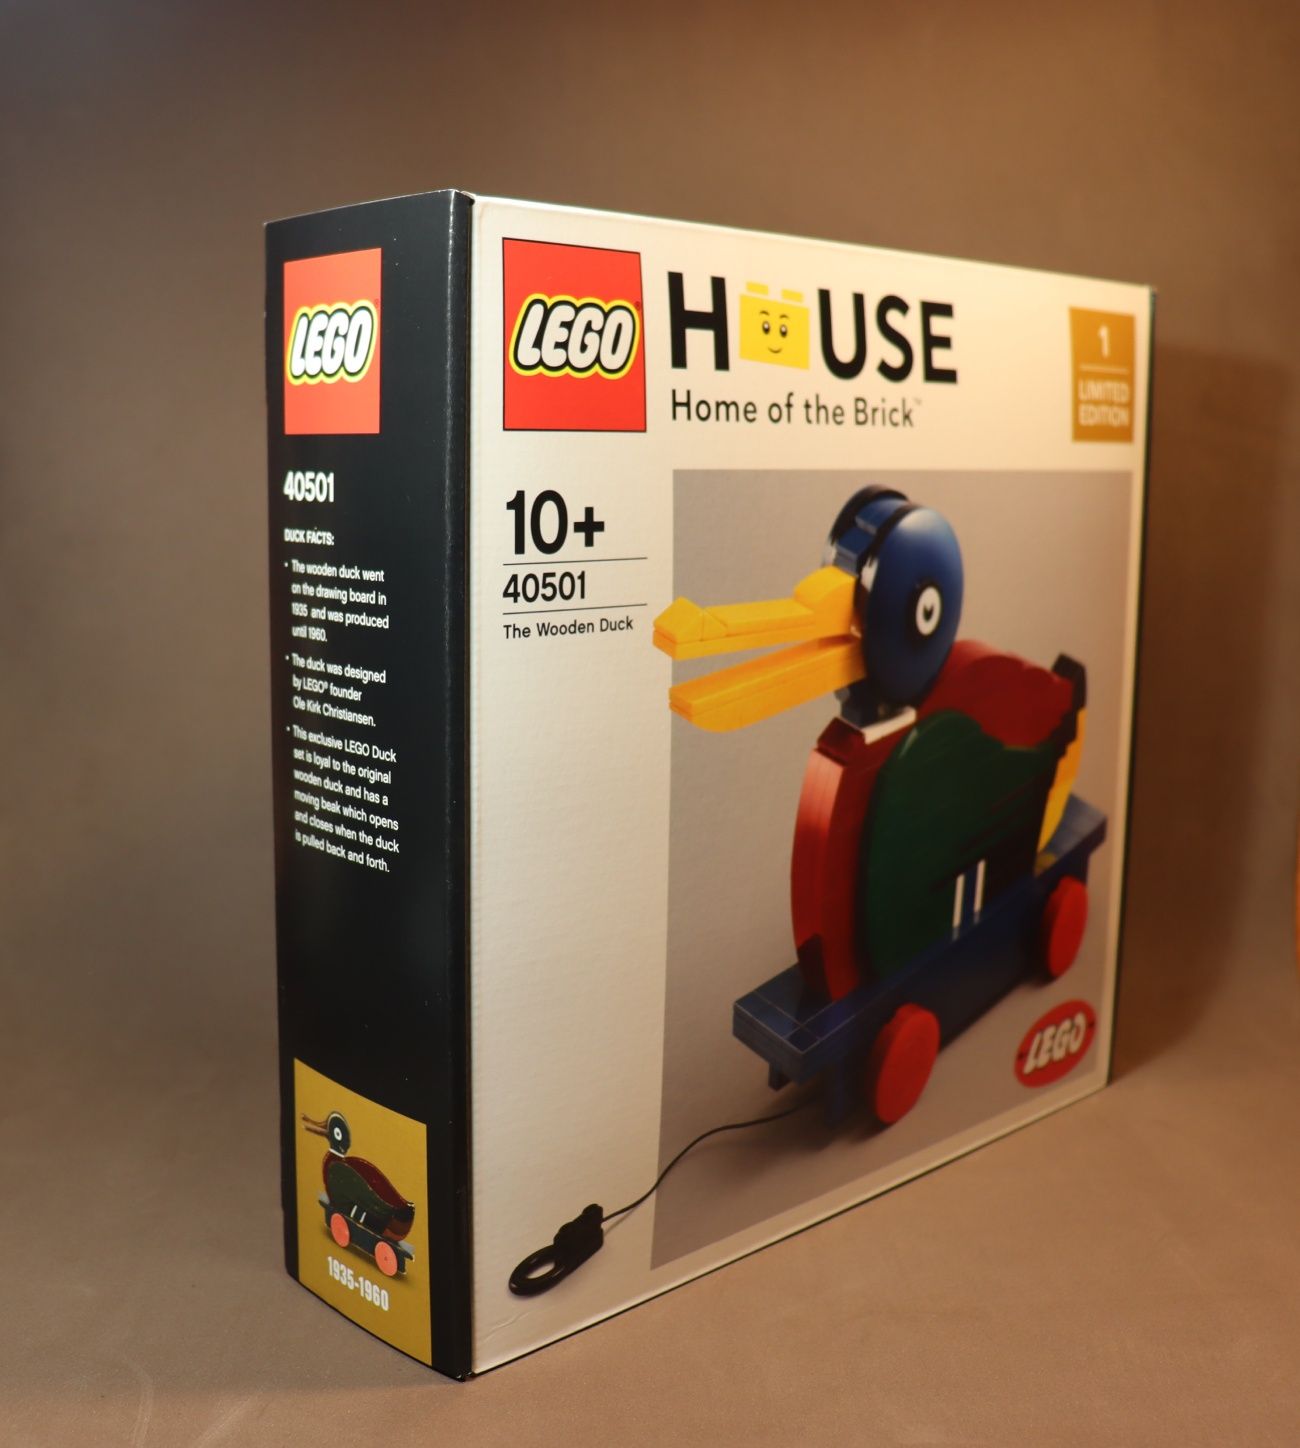 Lego NOVO 40501 "The Wooden Duck" exclusivo da Lego House na Dinamarca